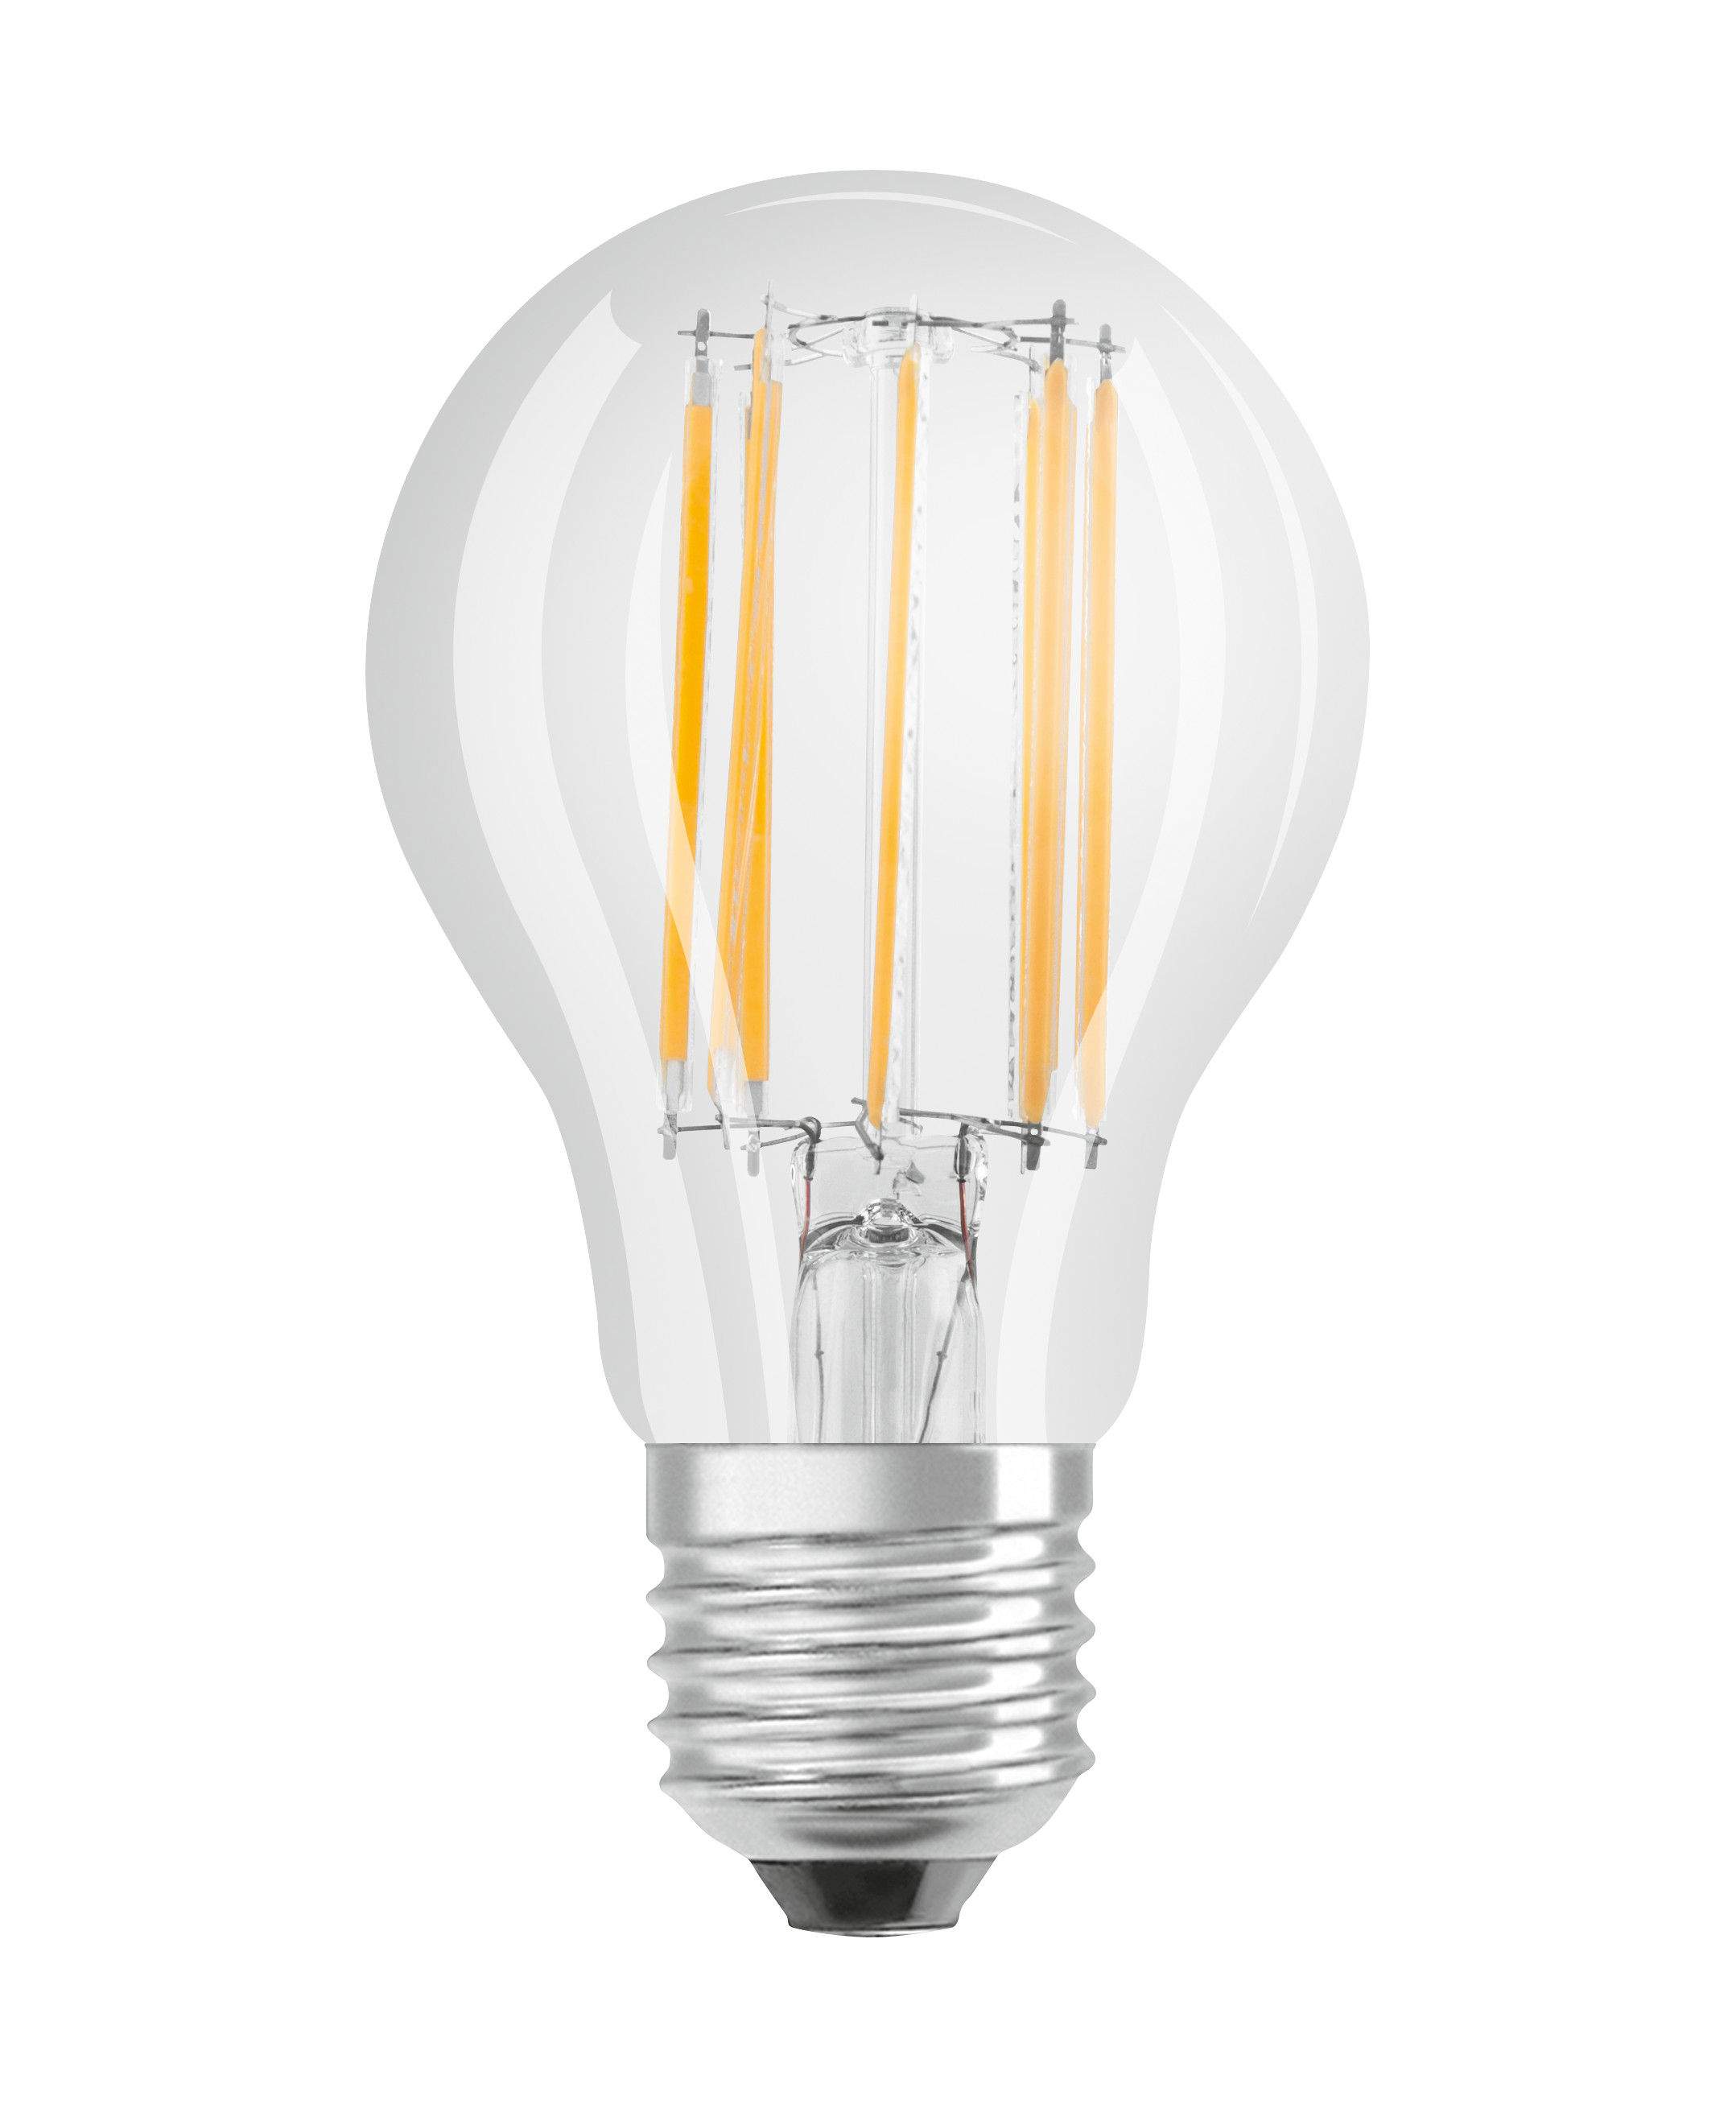 Ampoule LED verre transparent standard E27, 11W, blanc froid.